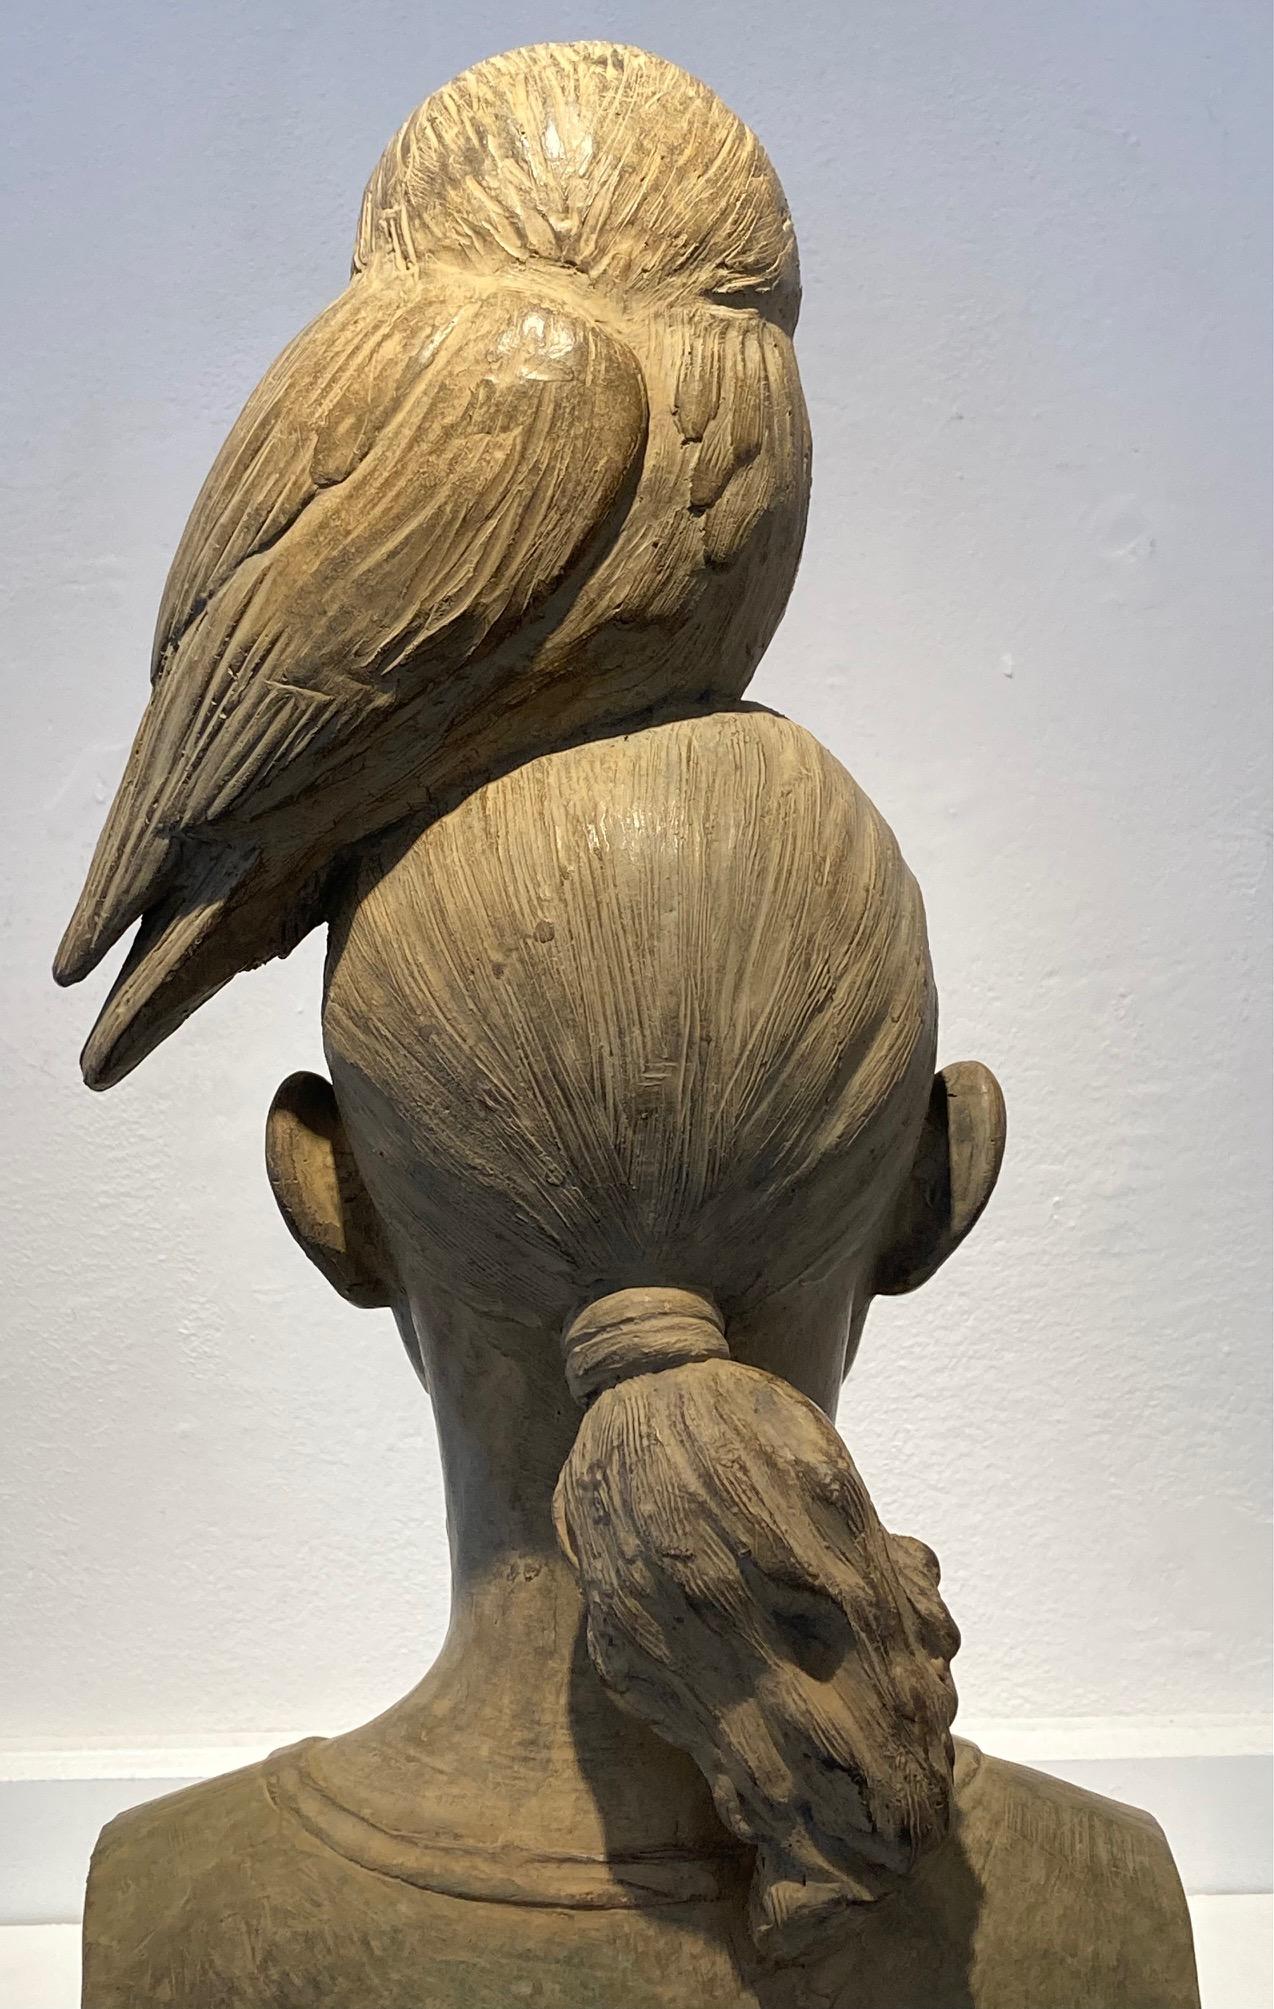 Uil Owl Bronze Sculpture Girl with Owl on Head Wisdom Contemporary En stock 
Les statues d'Erwin Meijer sont subtiles, avec une écriture reconnaissable et personnelle.
Ils respirent l'atmosphère d'un poème narratif, où le lecteur rencontre non